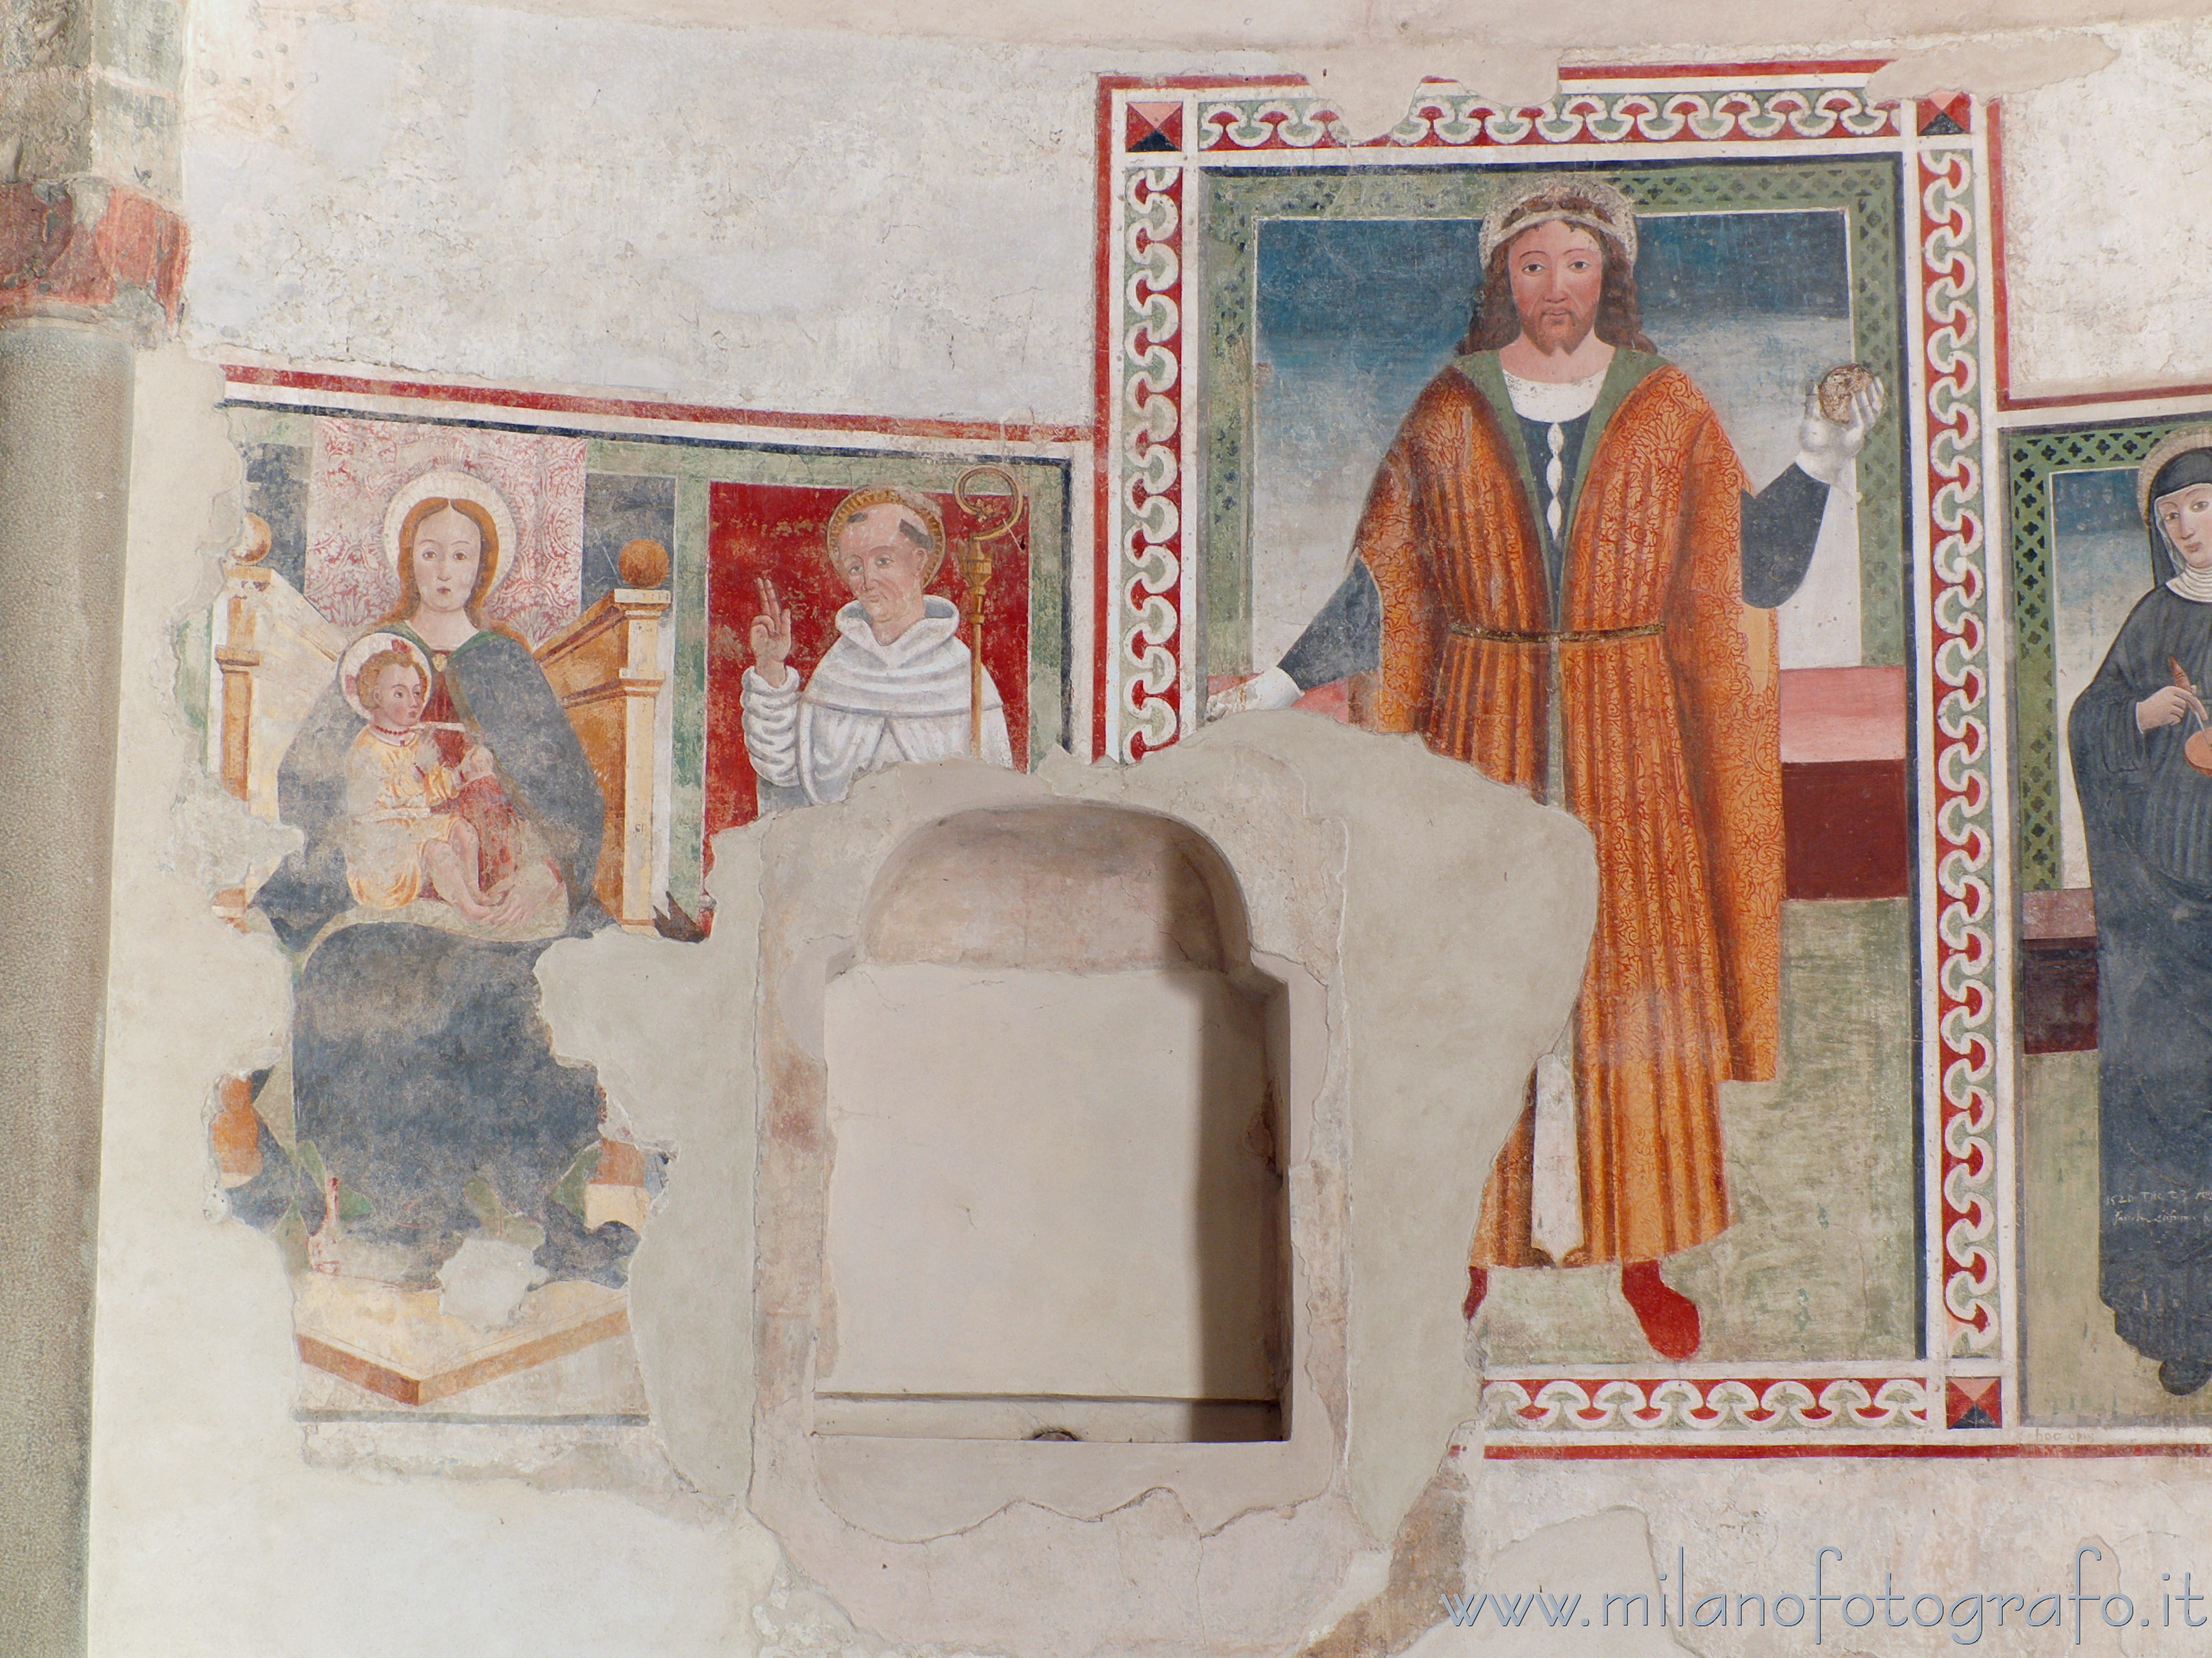 Oggiono (Lecco): Affreschi votivi di santi nel Battistero di San Giovanni Battista - Oggiono (Lecco)